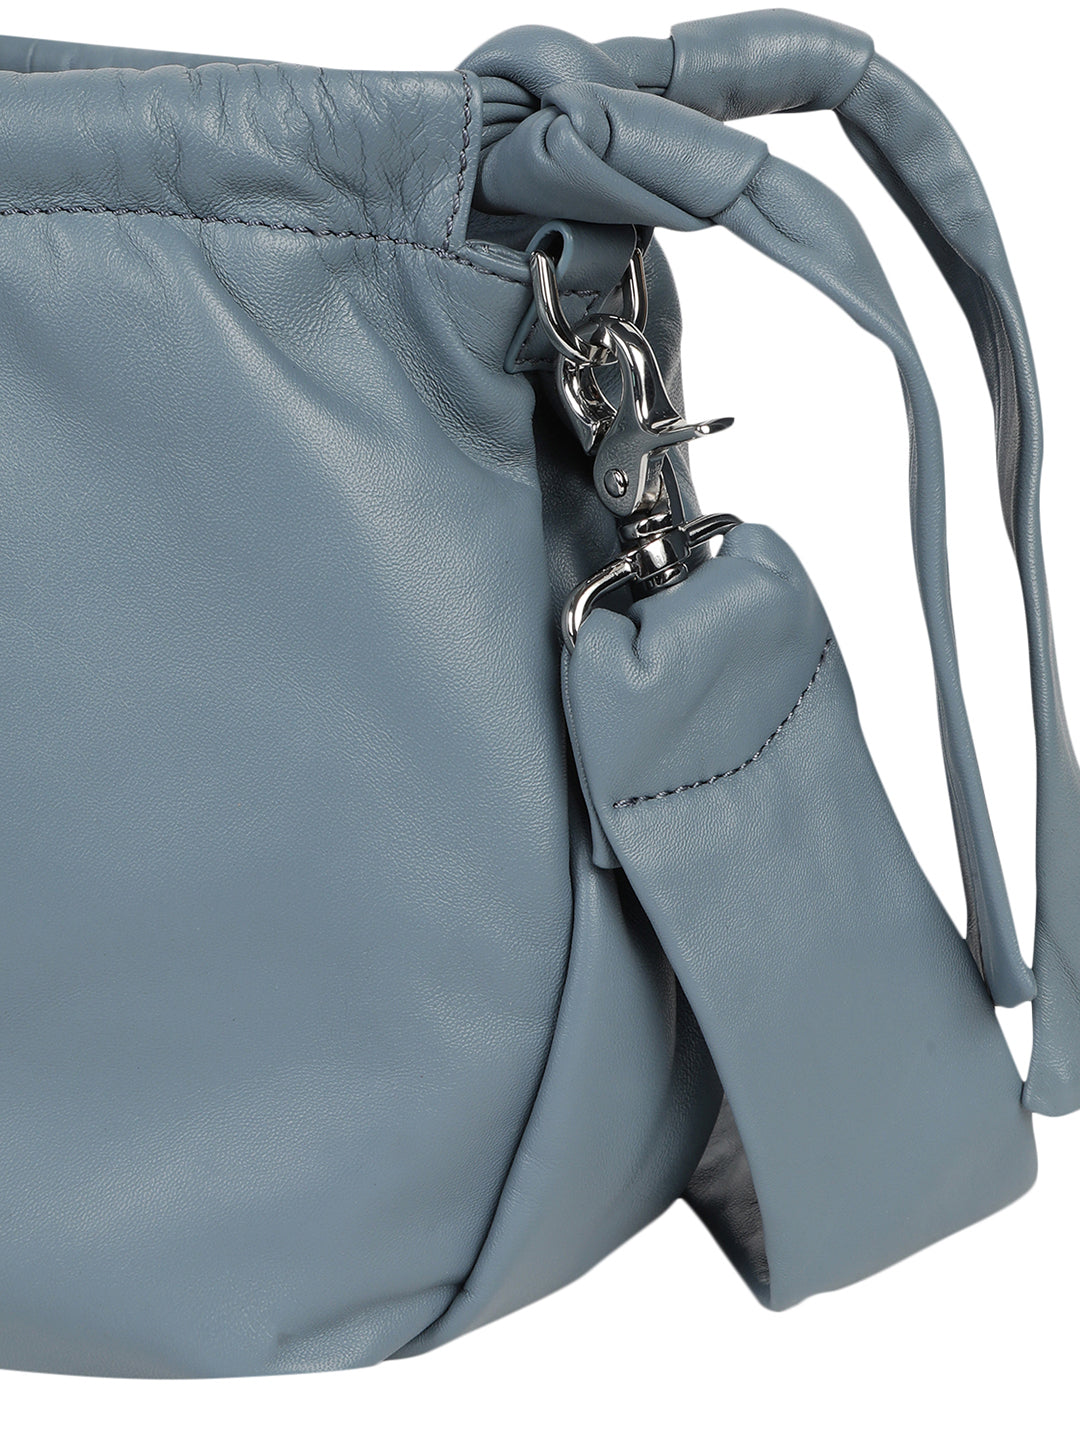 Solza Blue Leather Knotted Shoulder Bag